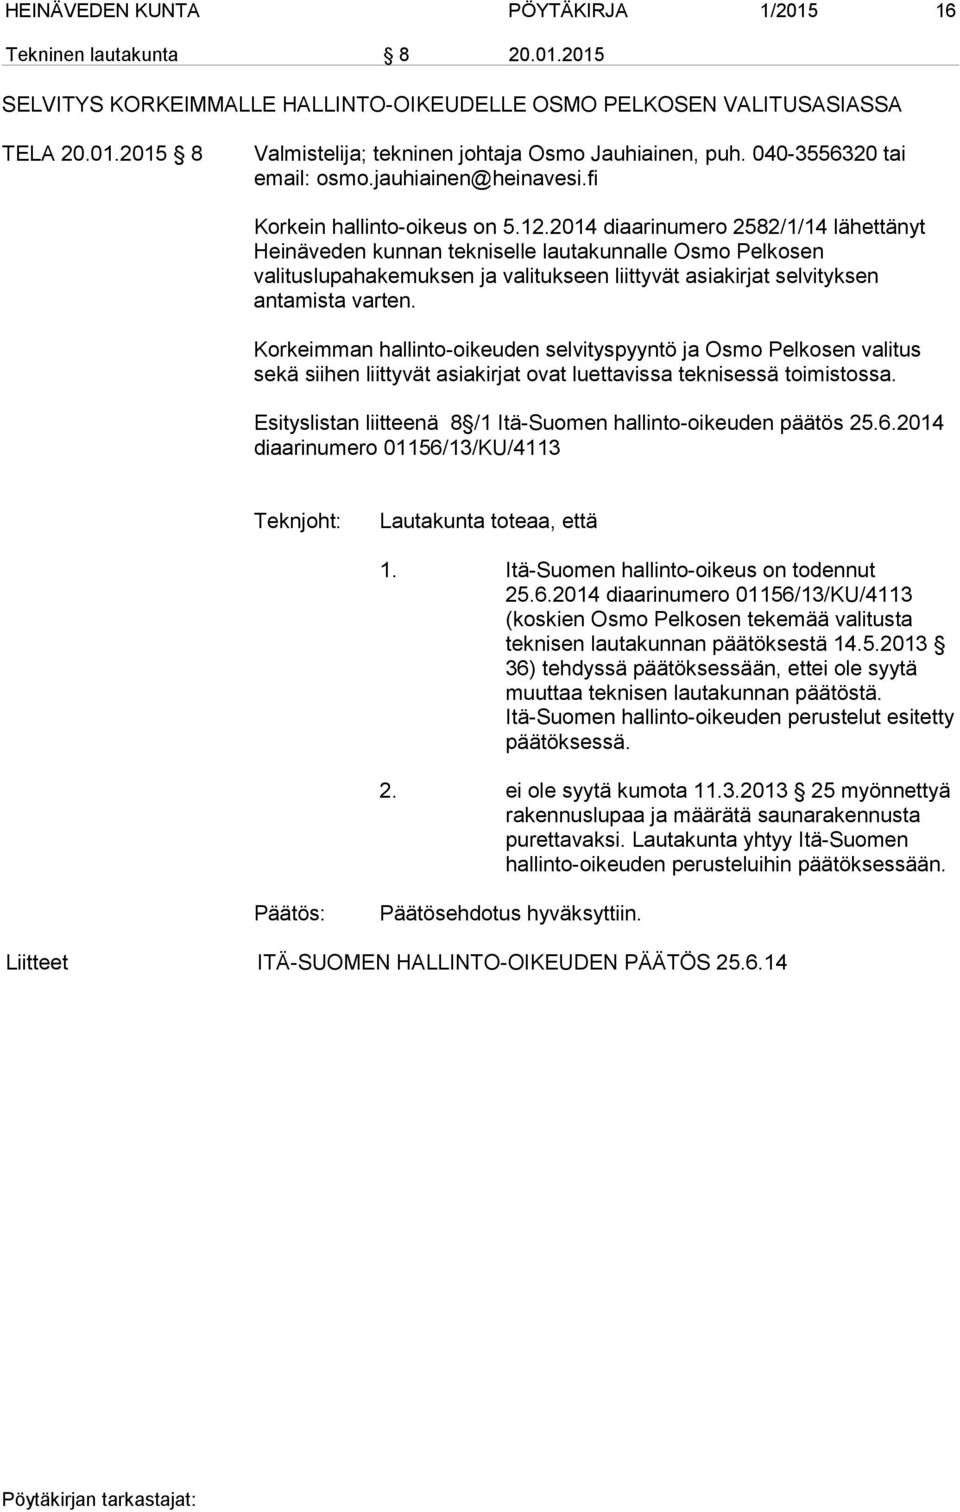 2014 diaarinumero 2582/1/14 lähettänyt Heinäveden kunnan tekniselle lautakunnalle Osmo Pelkosen valituslupahakemuksen ja valitukseen liittyvät asiakirjat selvityksen antamista varten.